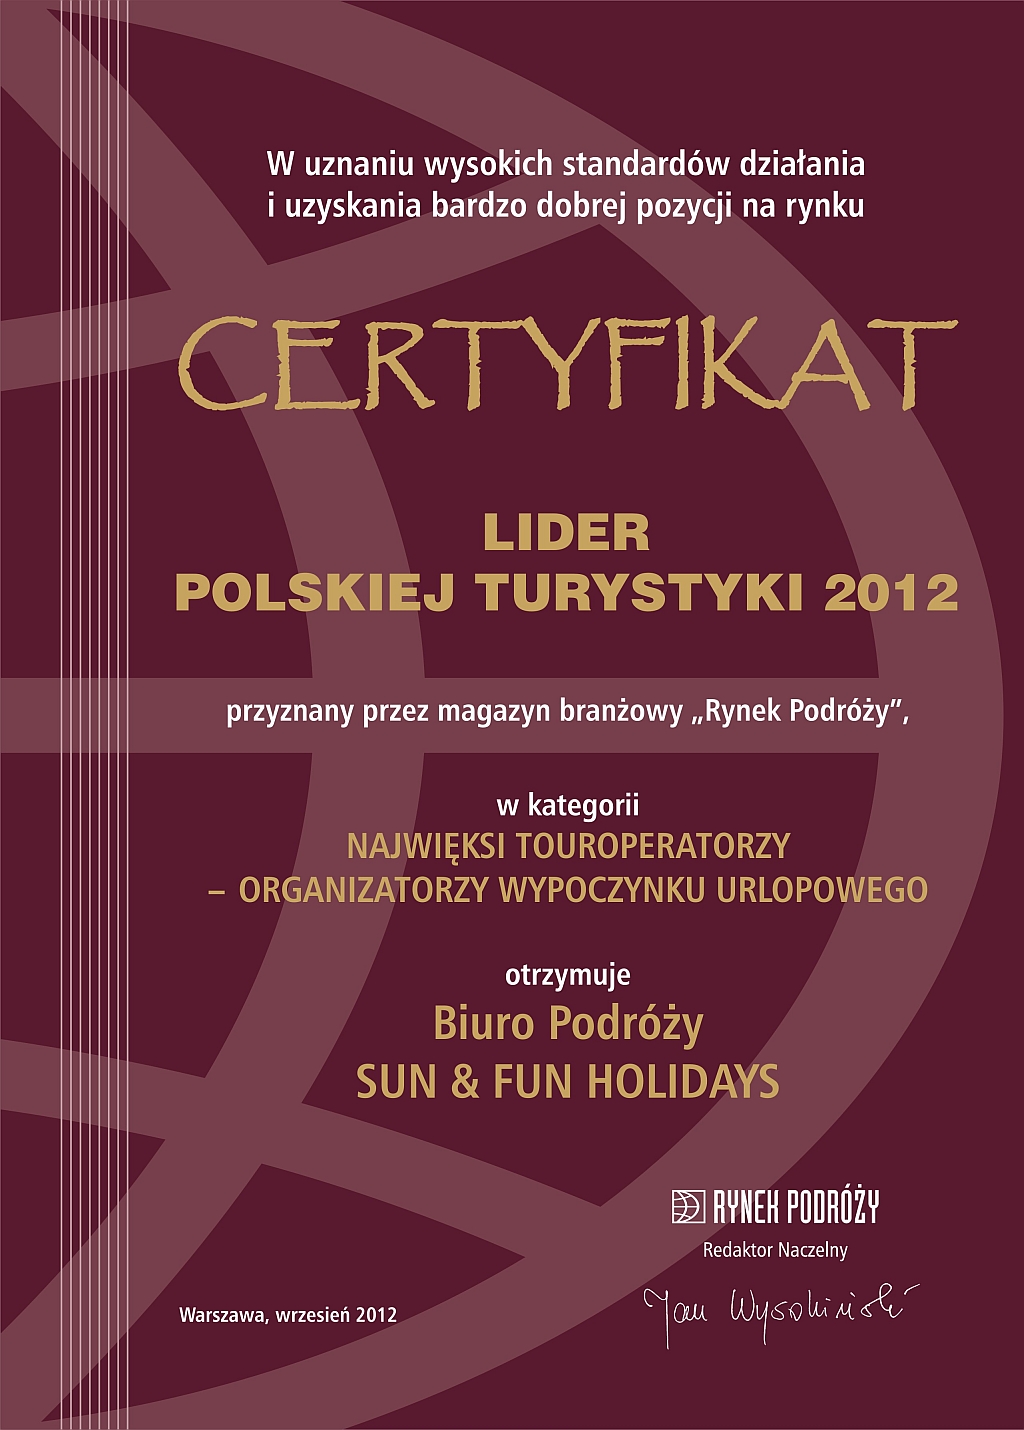 CERTYFIKAT LIDERA POLSKIEJ TURYSTYKI 2012 dla SUN & FUN